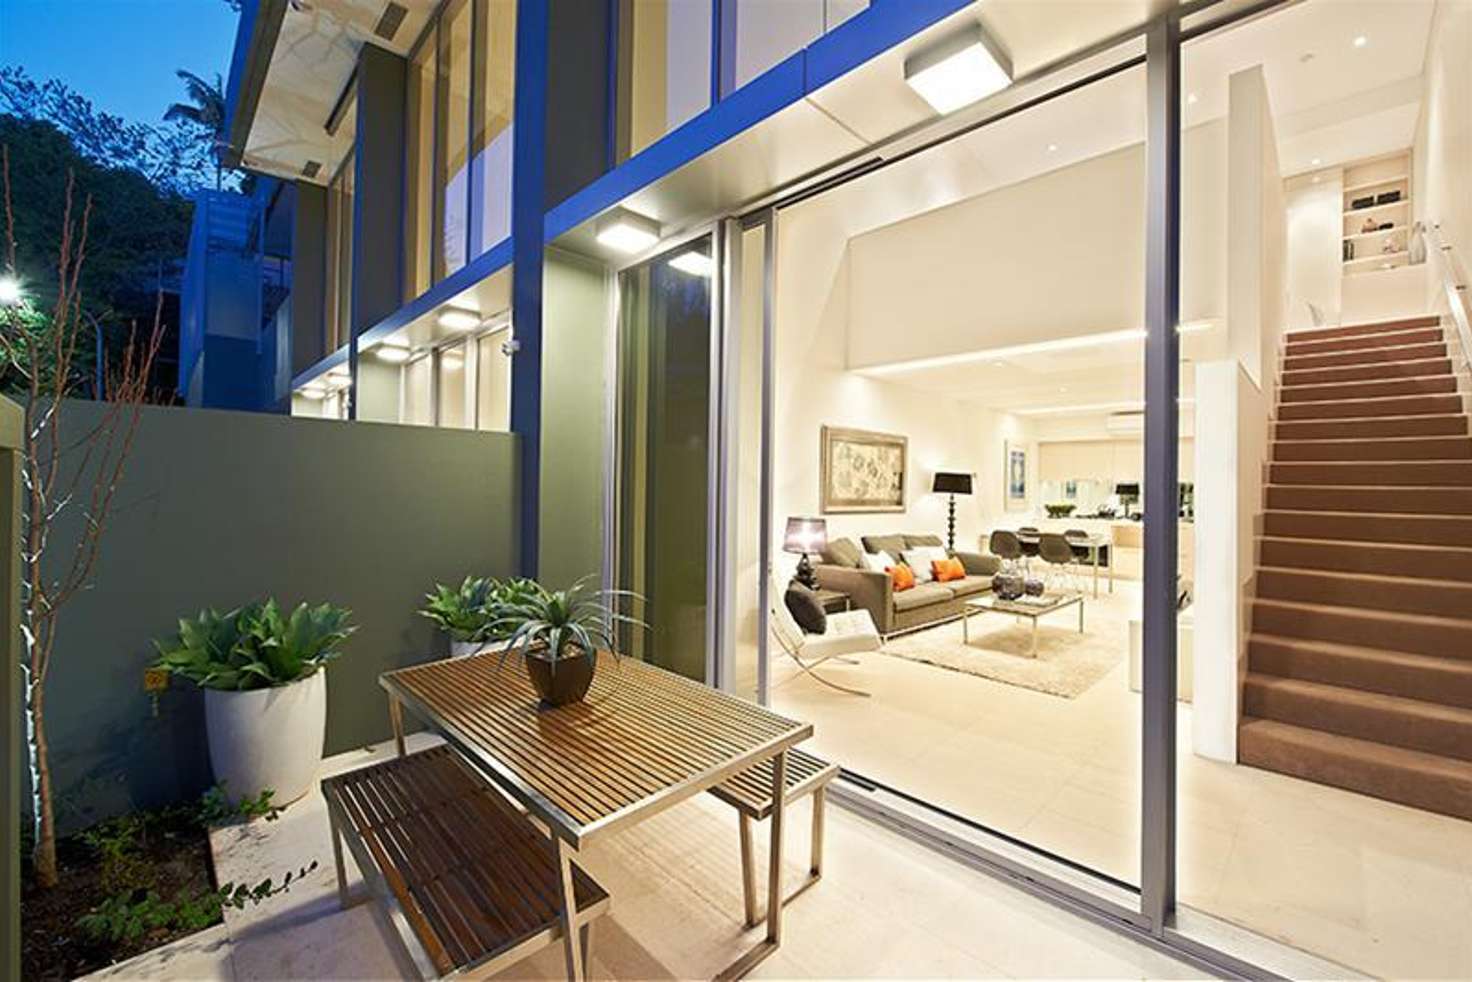 Main view of Homely apartment listing, 4 Roylston Lane, Paddington NSW 2021